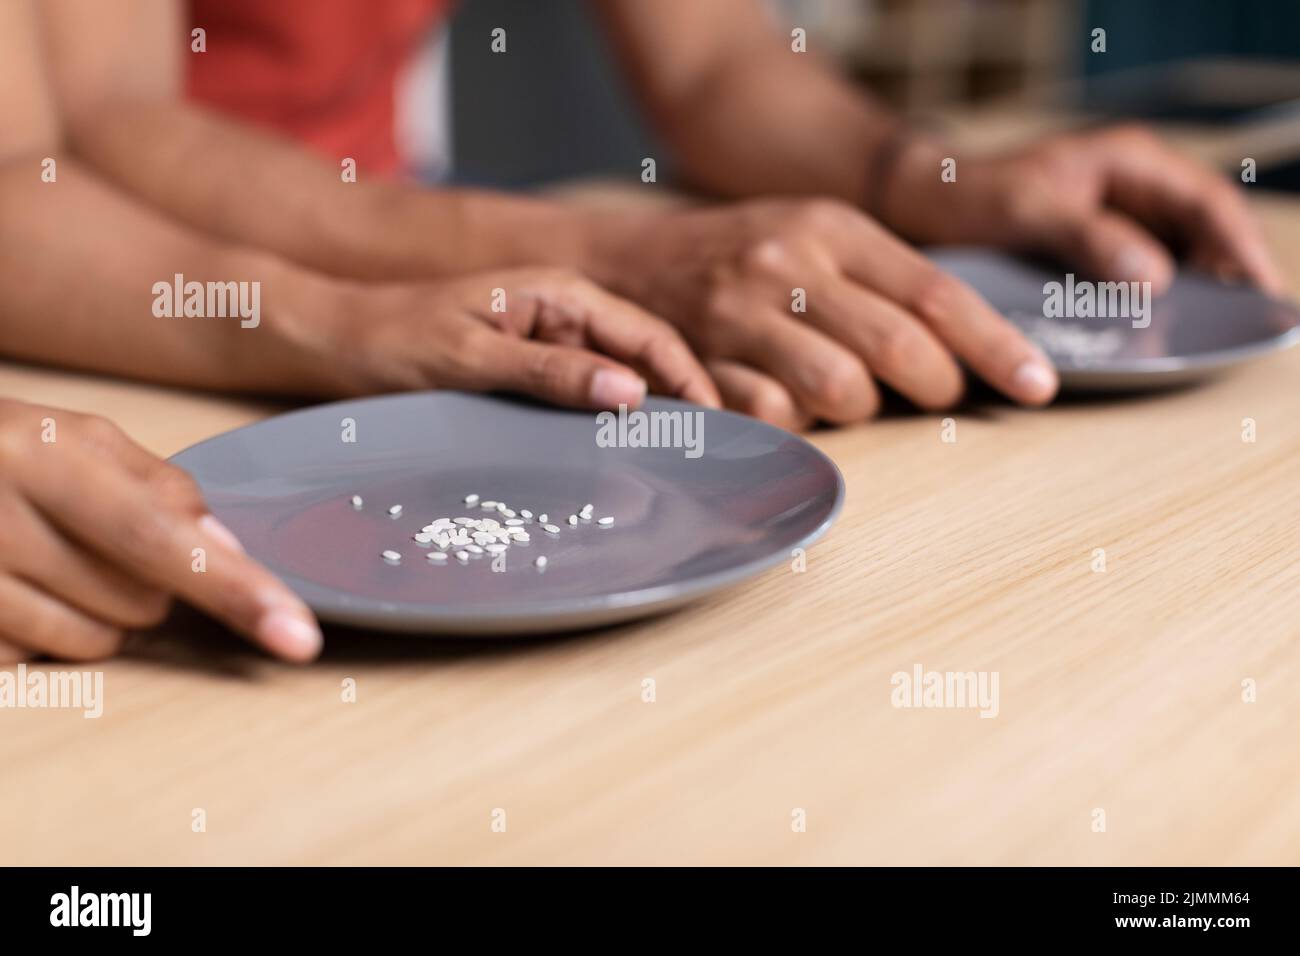 Hände junger schwarzer Familie halten Teller mit einigen Körnern Reis am Tisch in der Küche, abgeschnitten Stockfoto